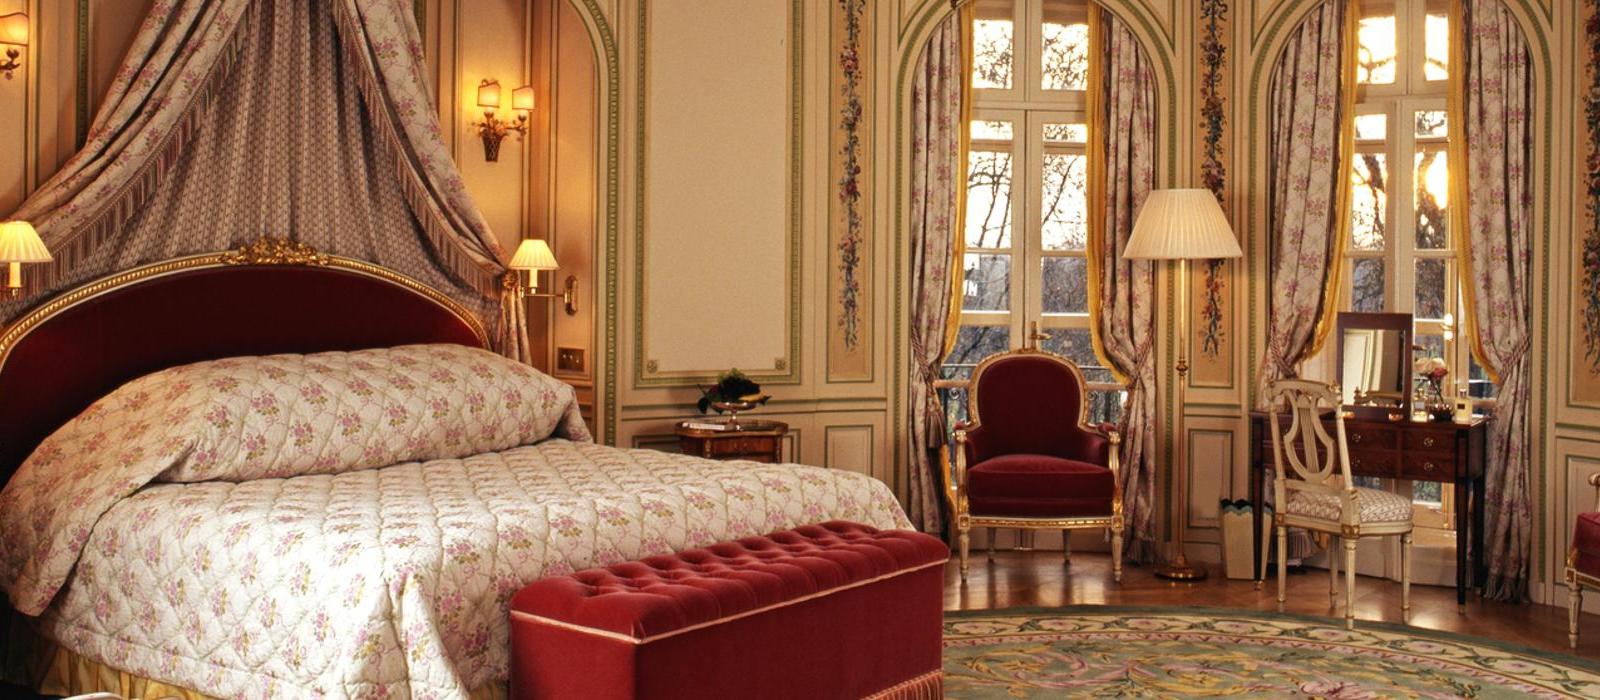 伦敦丽兹酒店(The Ritz London) 皇家套房图片  www.lhw.cn